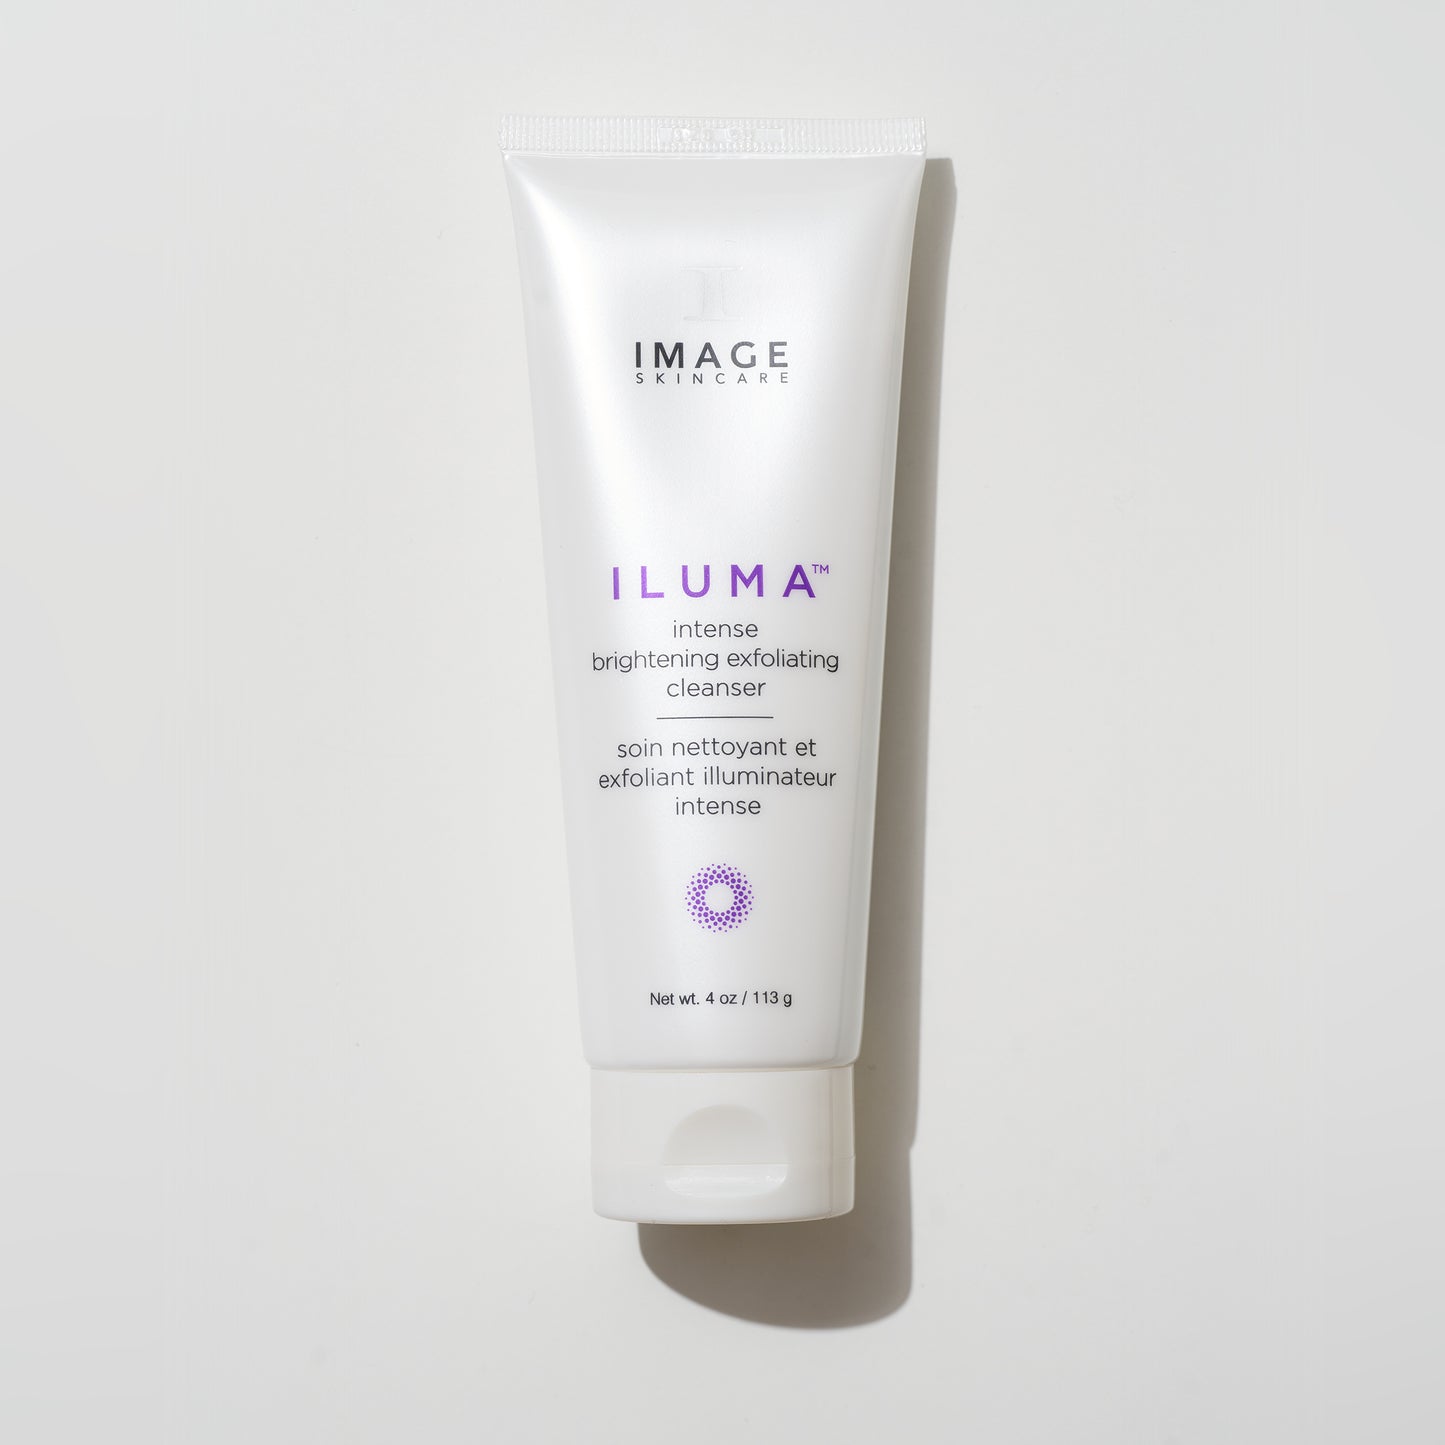 ILUMA intense brightening exfoliating cleanser, Image Skincare